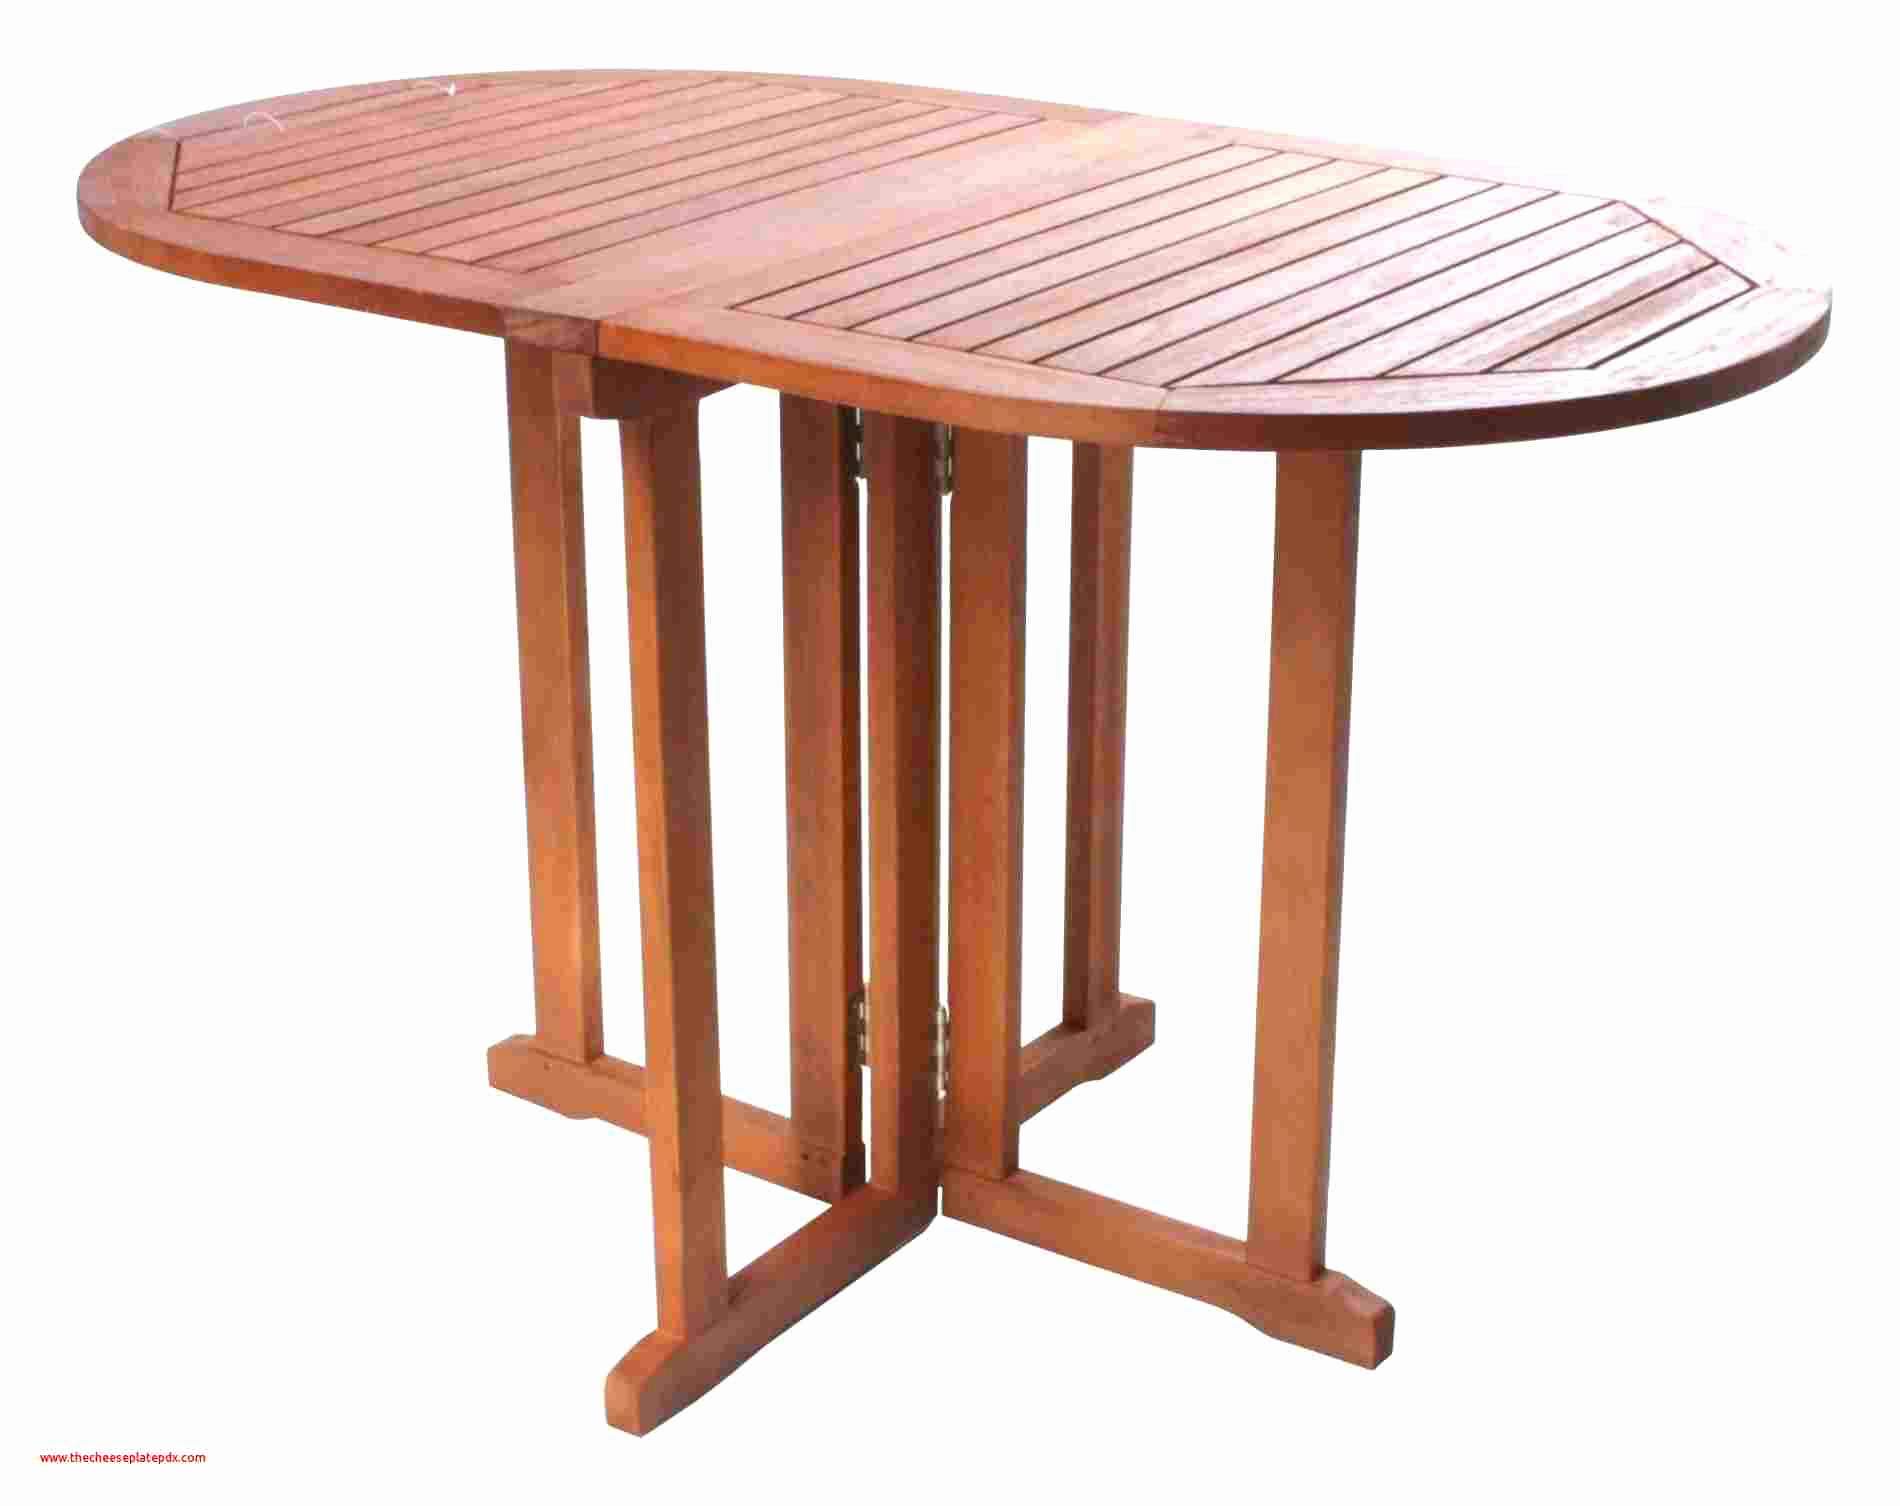 Tischdeko Aus Holz Selber Machen Schön 34 Inspirierend Holzstamm Deko Garten Elegant